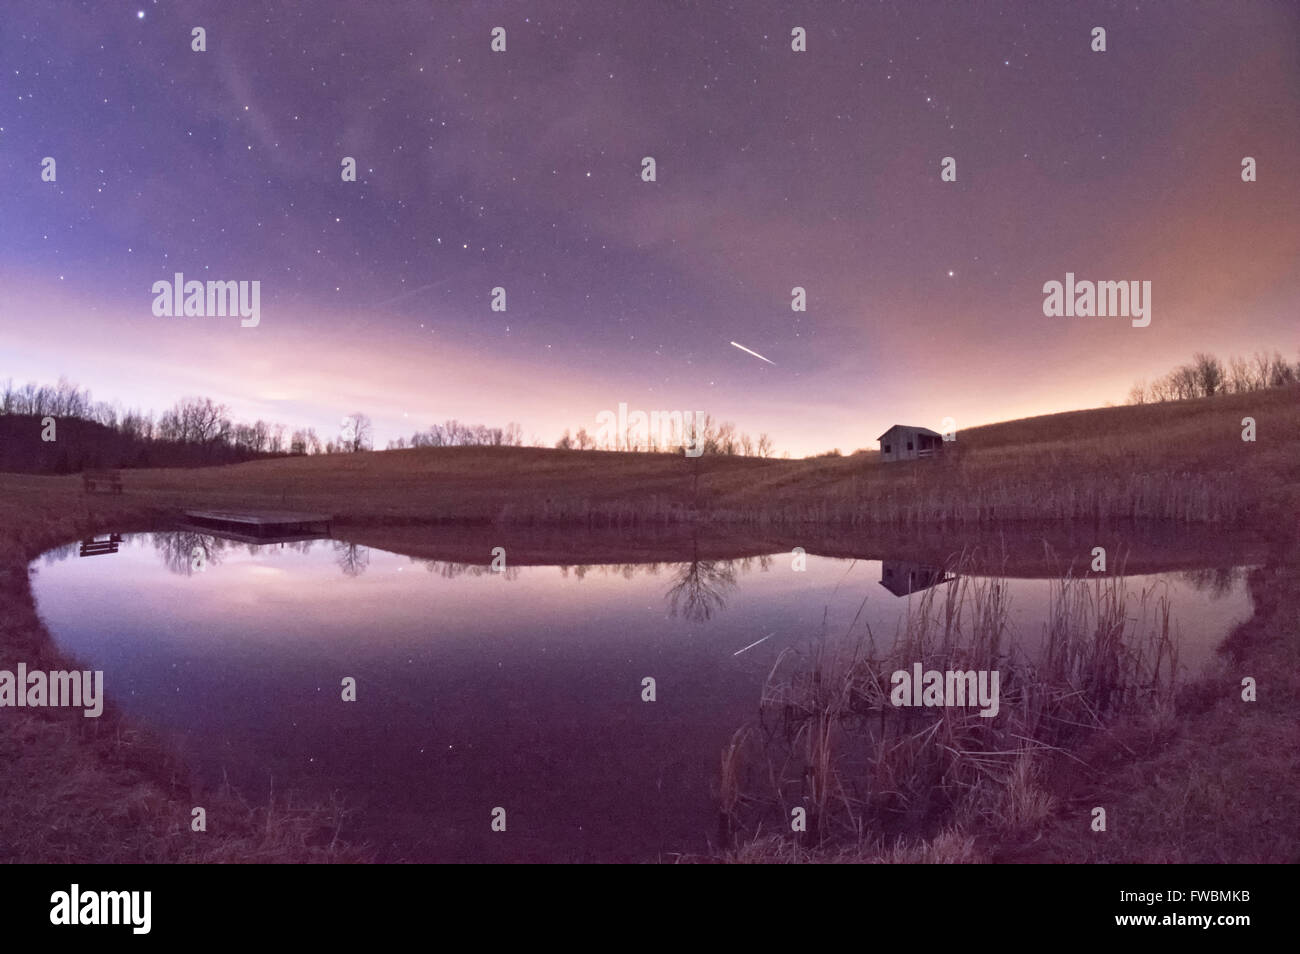 La station spatiale internationale rayures verticales sur le ciel nocturne juste après le crépuscule réfléchi sur l'étang. Banque D'Images